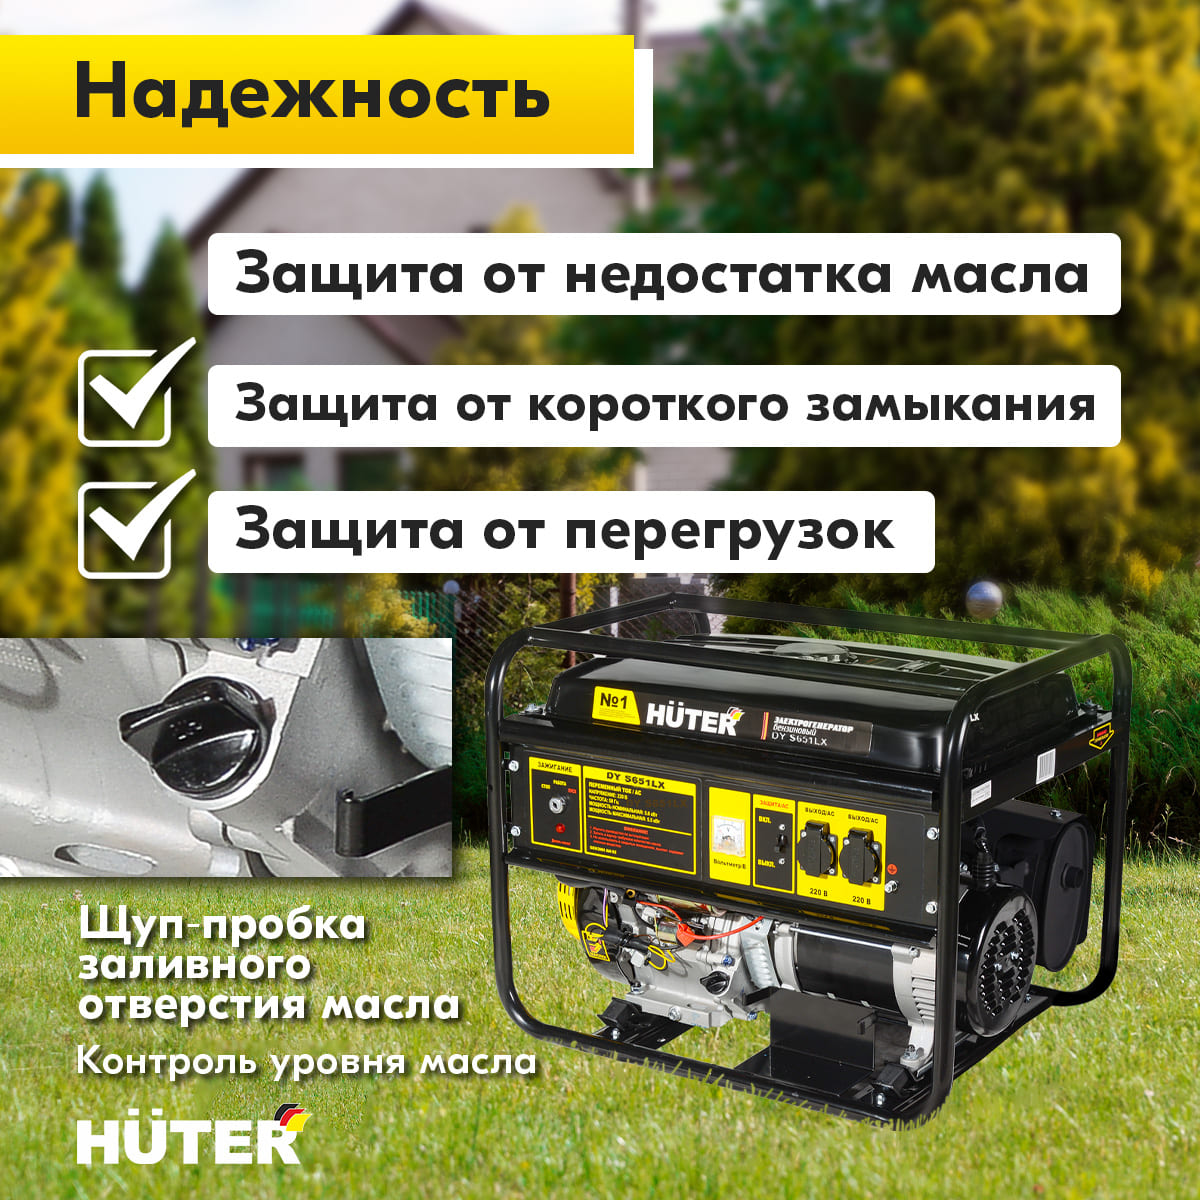 Электрогенератор Huter DY S651LX-электростартер 900/64/1/89